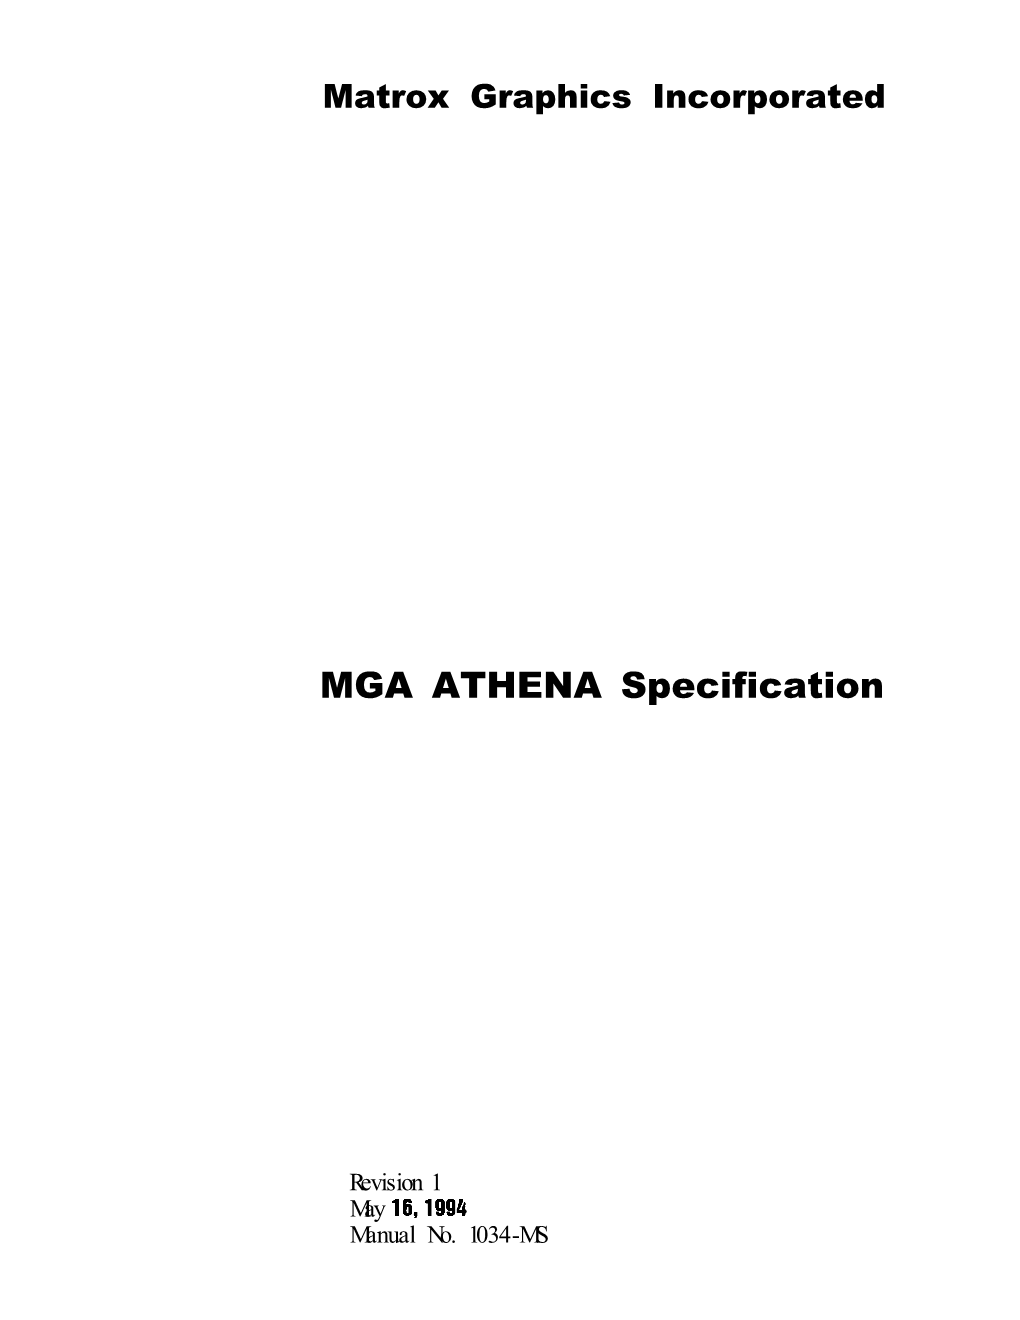 MGA ATHENA Specification